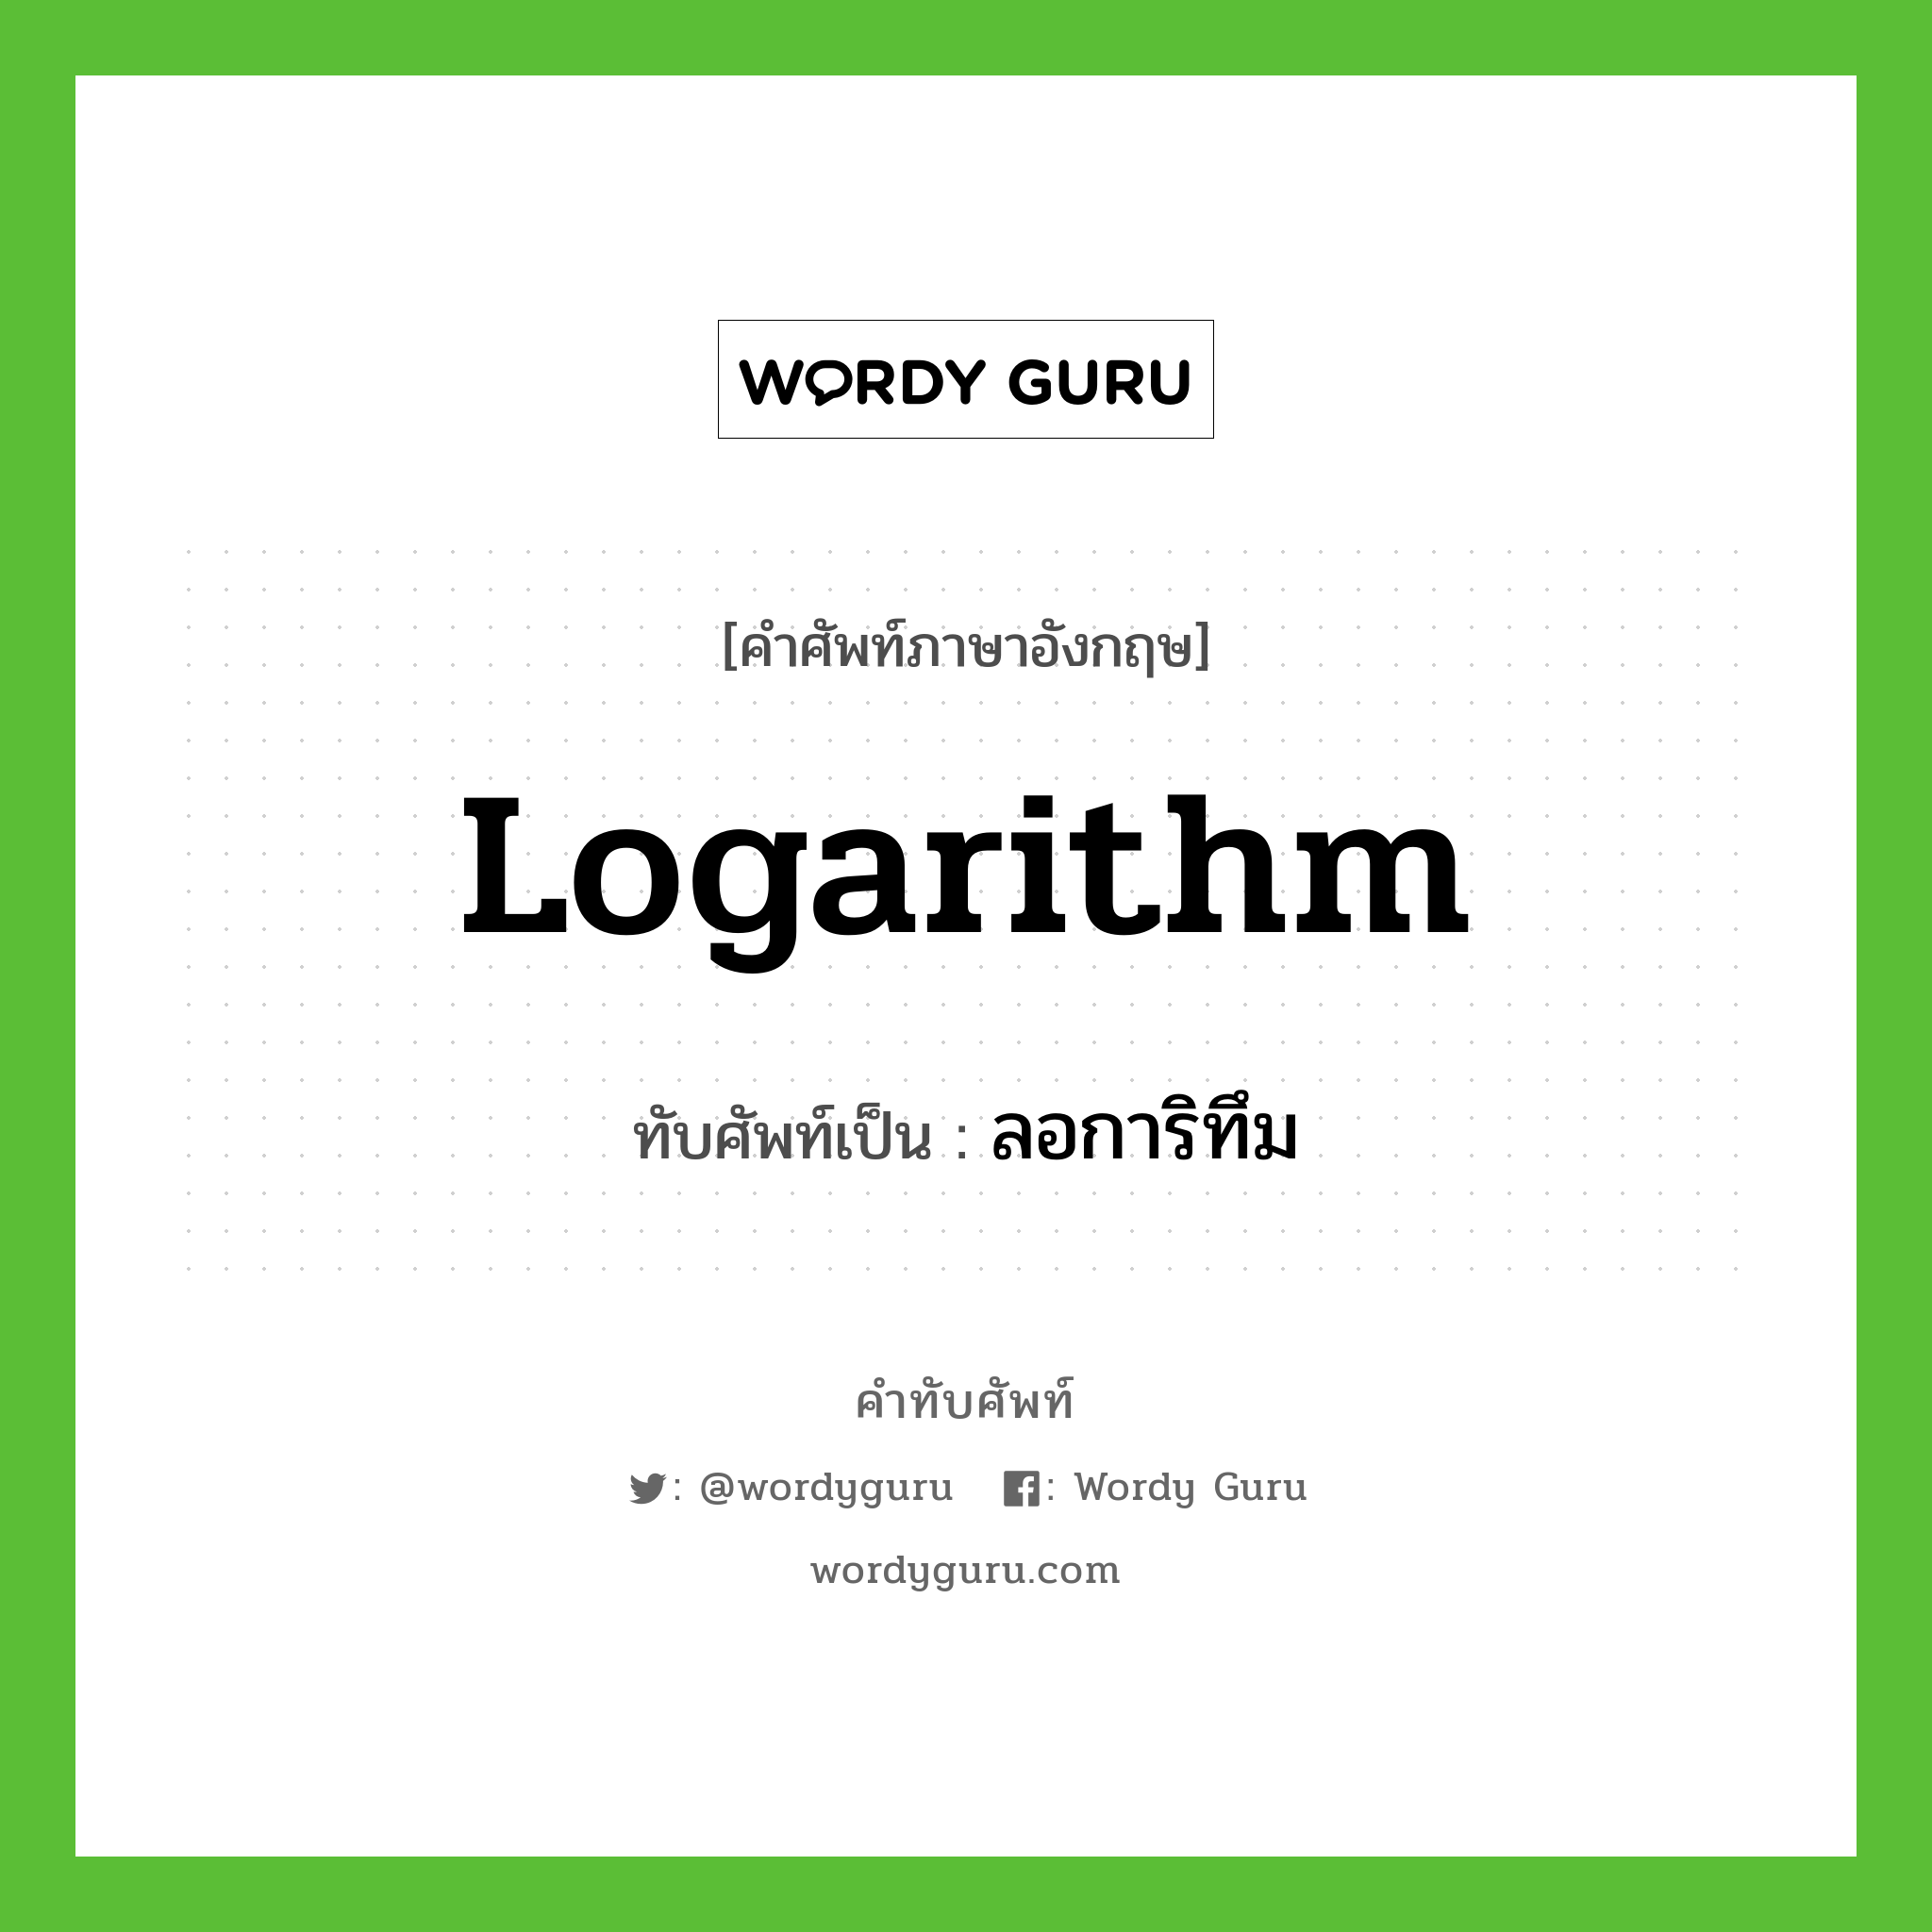 logarithm เขียนเป็นคำไทยว่าอะไร?, คำศัพท์ภาษาอังกฤษ logarithm ทับศัพท์เป็น ลอการิทึม